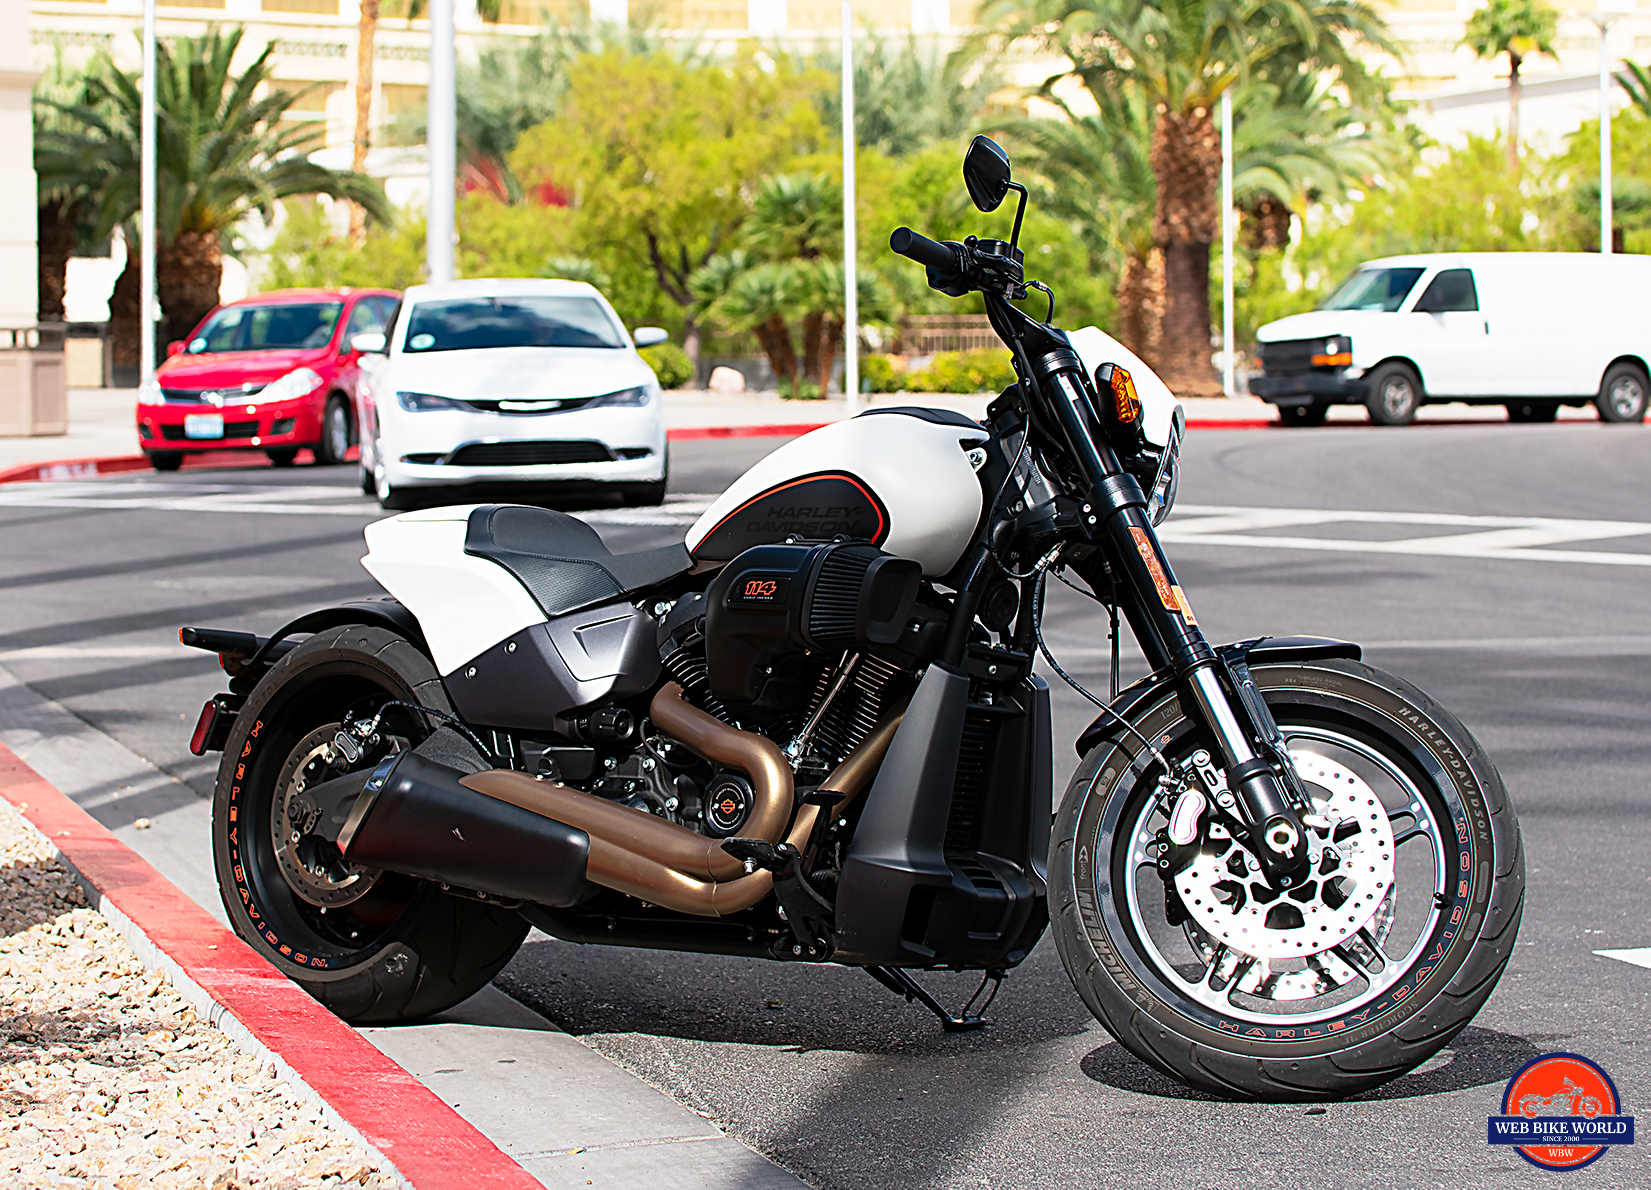 2019 Harley Davidson FXDR Test Ride